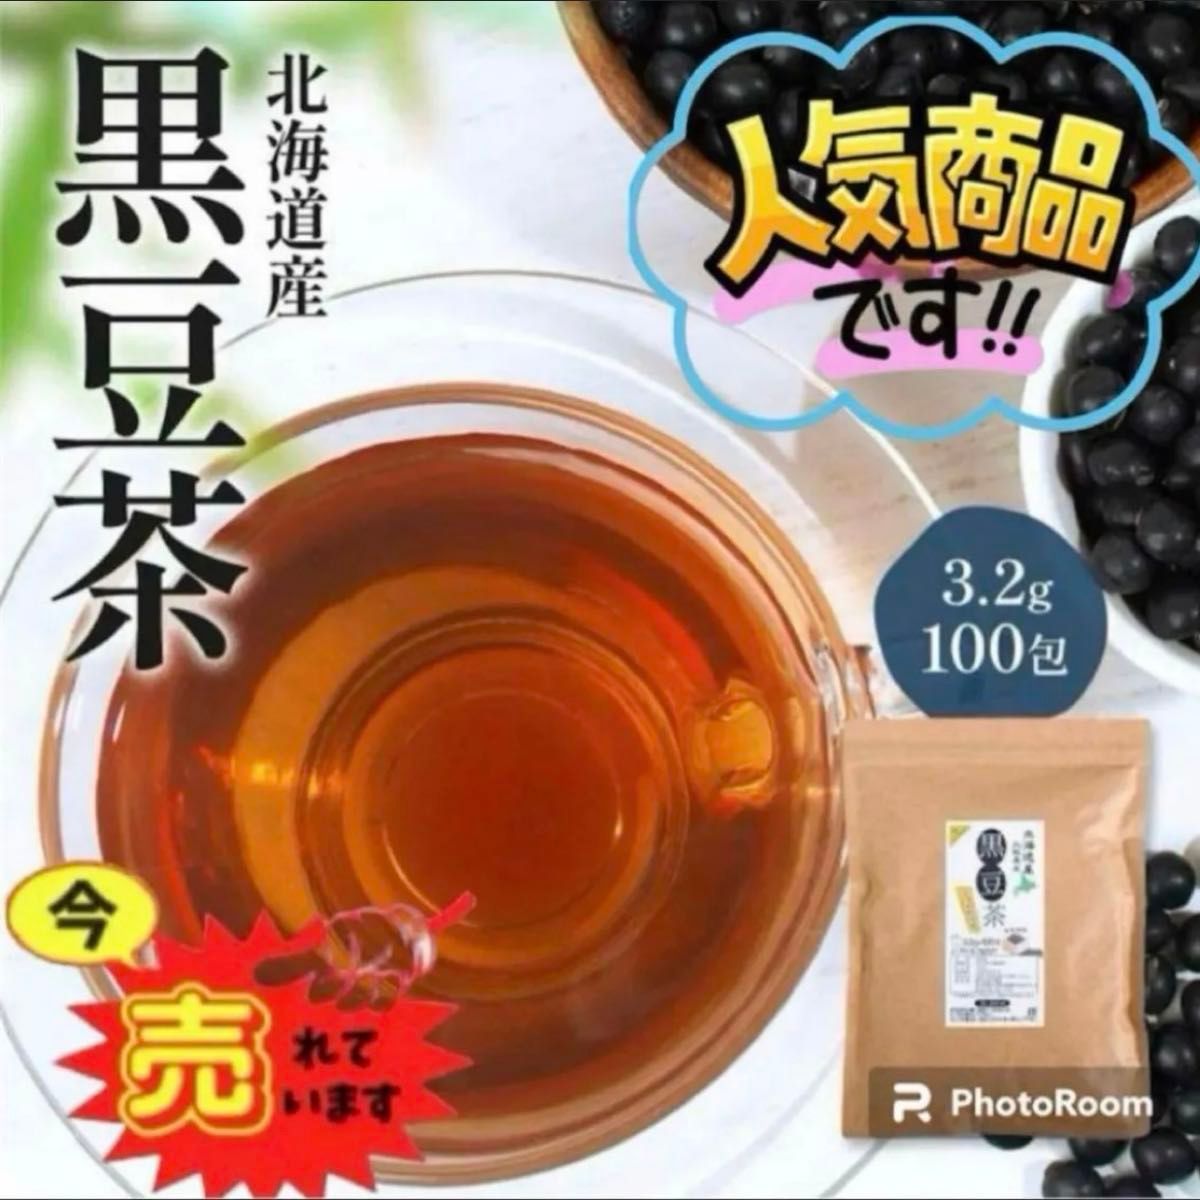 黒豆茶 北海道産 ティーバッグ ノンカフェイン 320g (3.2g×100包) 国産 ティーパック クーポン利用 お茶